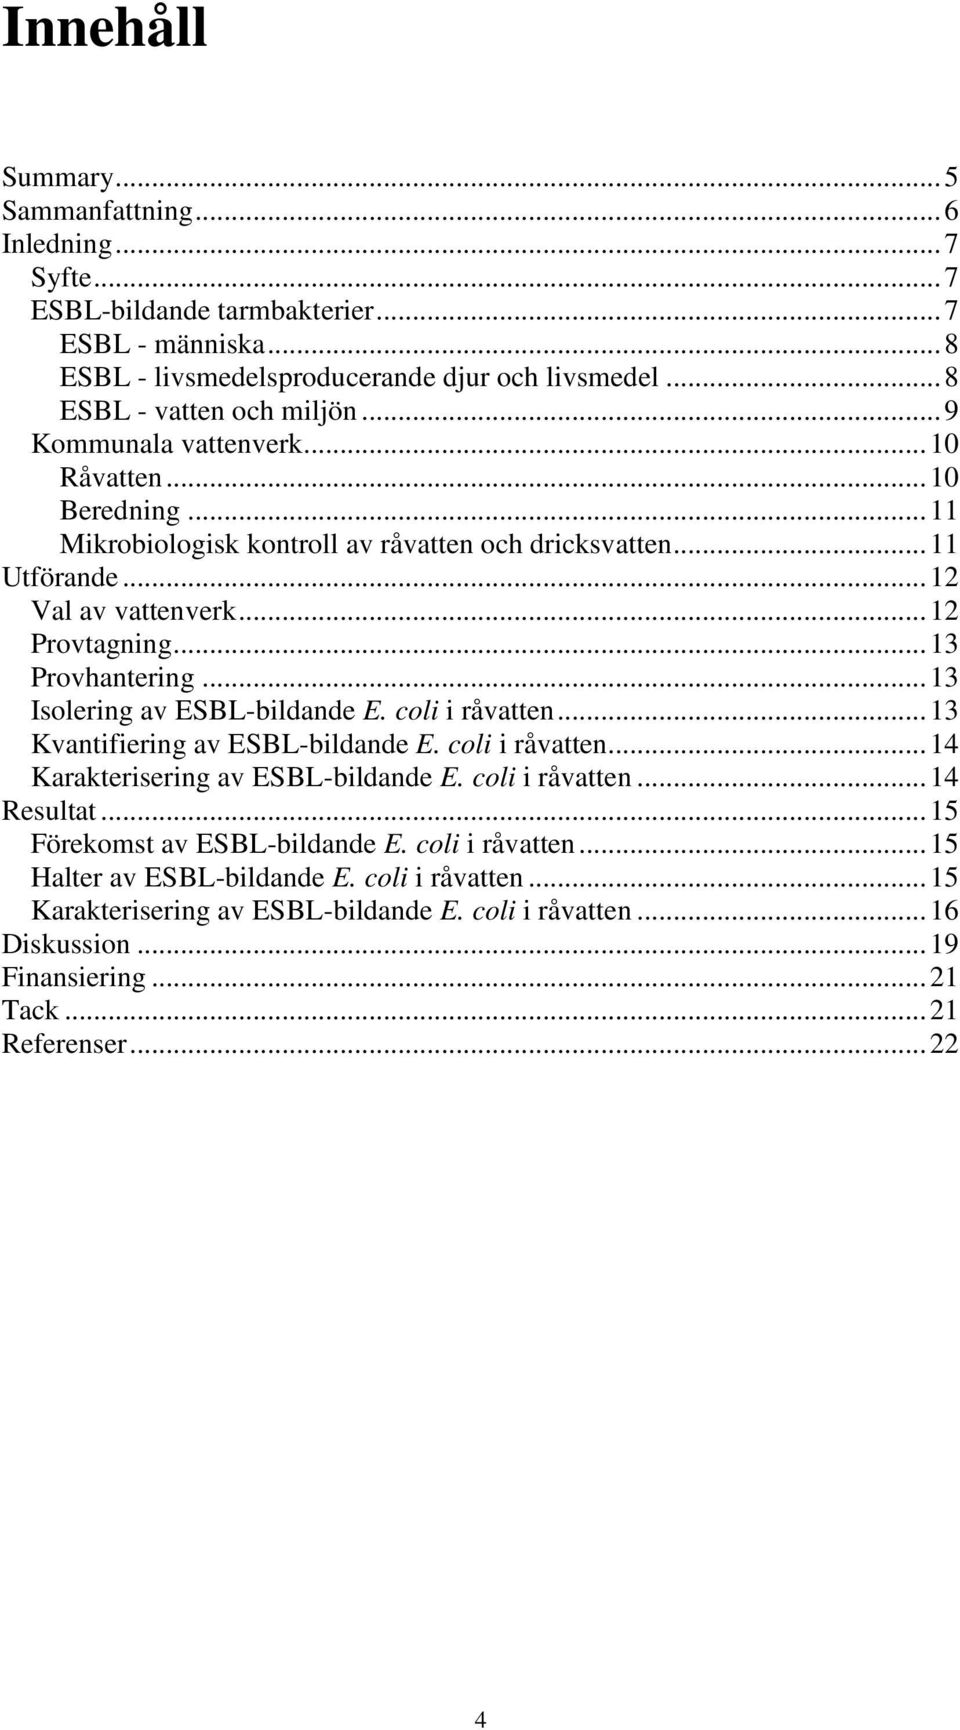 .. 13 Isolering av ESBL-bildande E. coli i råvatten... 13 Kvantifiering av ESBL-bildande E. coli i råvatten... 14 Karakterisering av ESBL-bildande E. coli i råvatten... 14 Resultat.